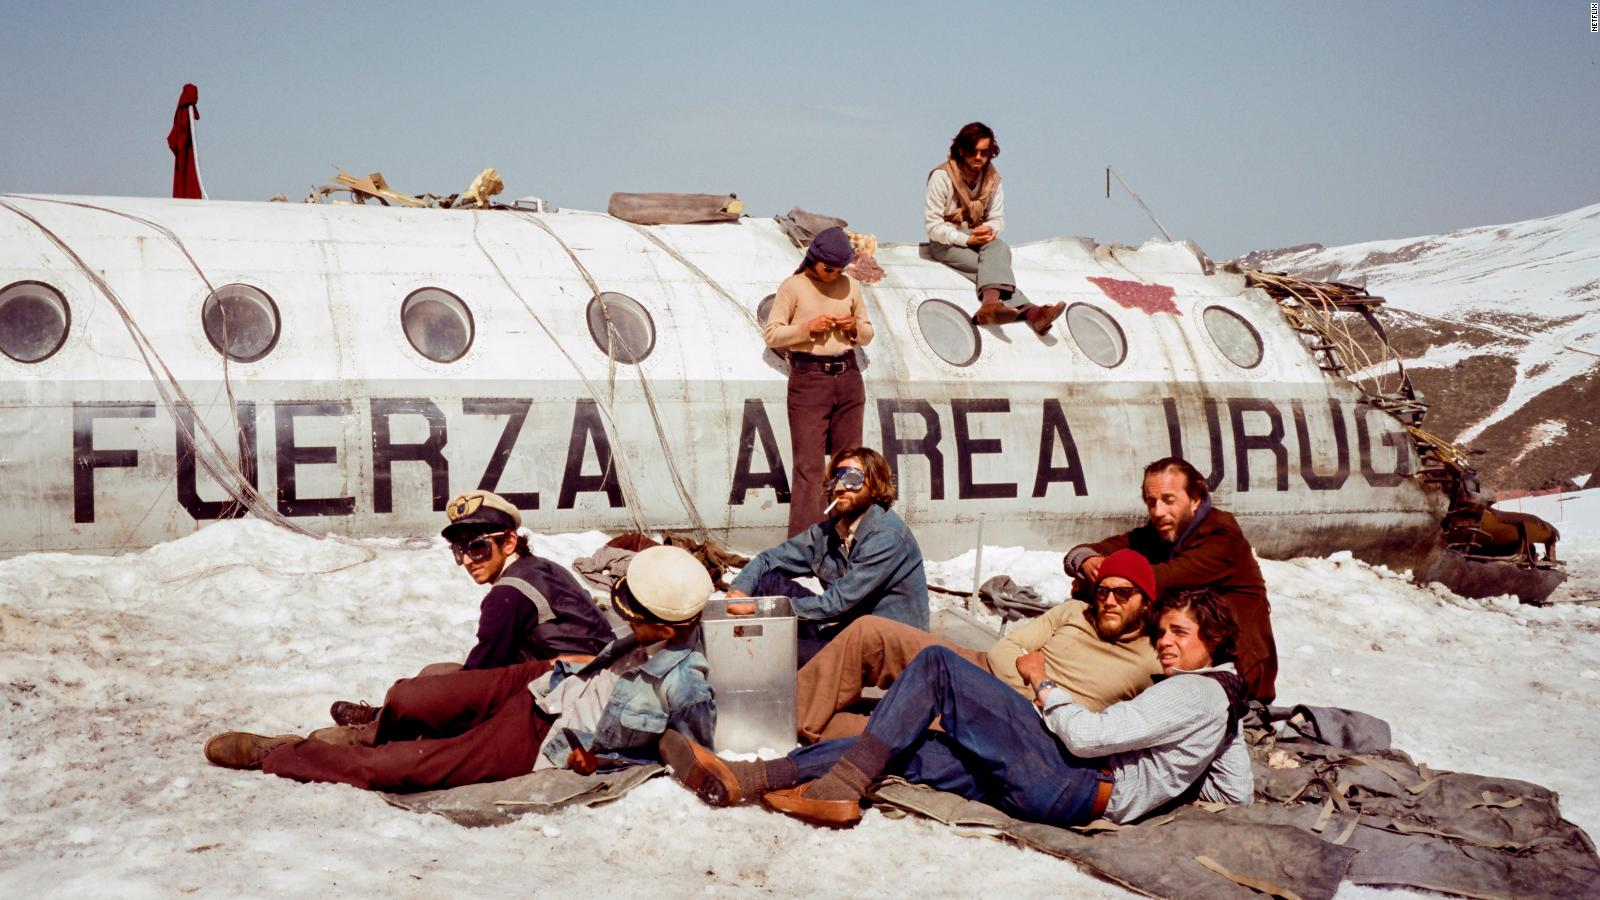 Sobrevivientes del accidente aéreo en Los Andes, sentados en la nieve y encima del avión, en La Sociedad de la nieve